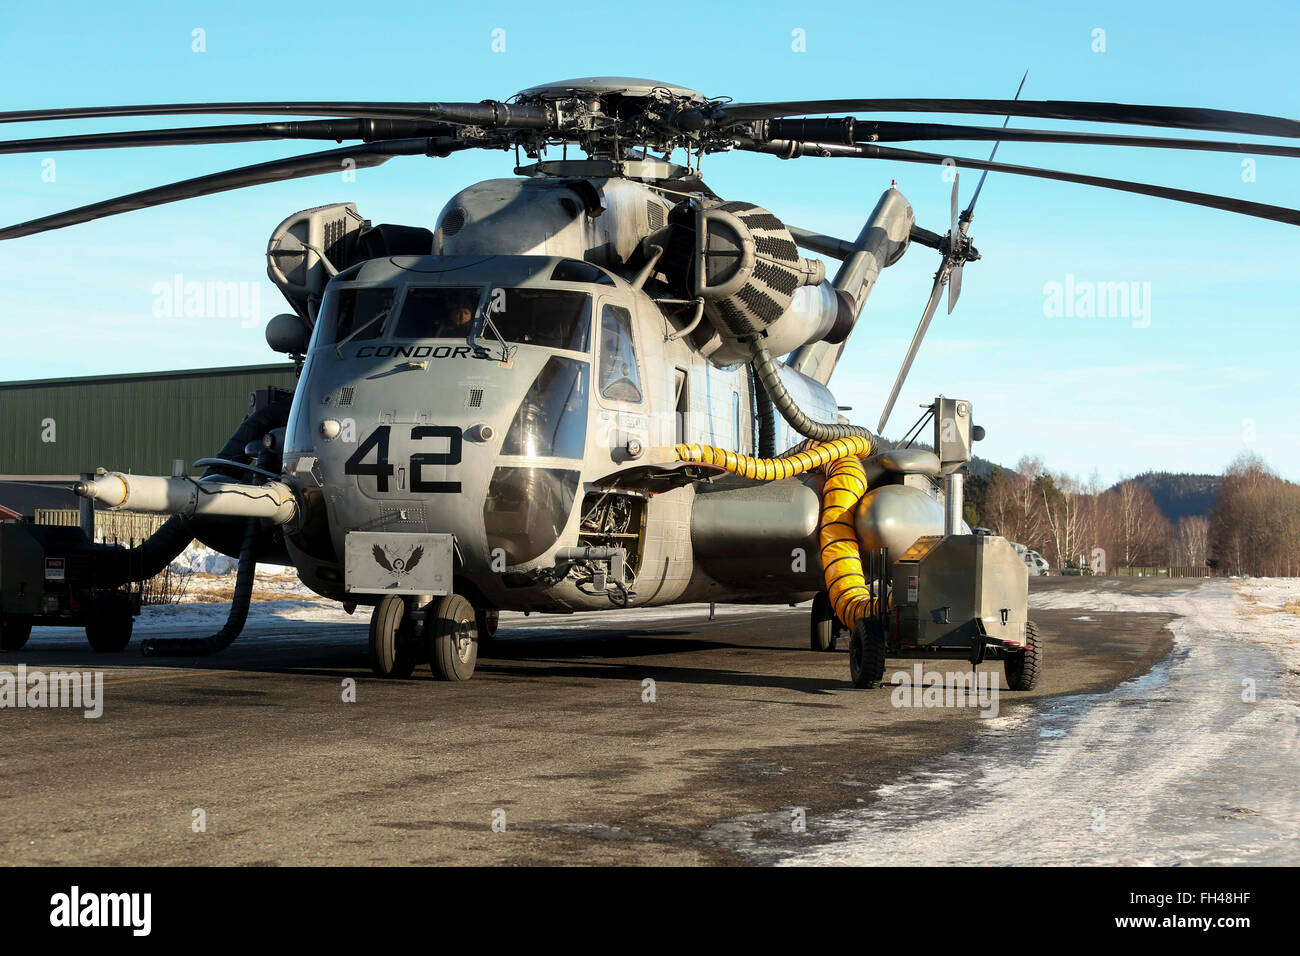 Un Corps des marines de l'hélicoptère CH-53 Super Stallion se trouve connecté à évents réchauffement comme il se prépare pour un vol plus tard dans la journée dans la région de Vaernes, la Norvège, le 22 février 2016. Tous les aéronefs à l'Escadron d'hélicoptères lourds Marine (-) renforcés, l'élément de combat de BAM 2d, ont été démantelés au Marine Corps Air Station Cherry Point, N.C., et piloté à la Norvège à l'U.S. Air Force C-5 Les galaxies jusqu'à fournir un appui aérien au cours de l'exercice. 16 Réponse froide est une combinaison d'exercice conjoint, composé de 12 membres de l'OTAN et des nations unies en partenariat et d'environ 16 000 soldats Banque D'Images